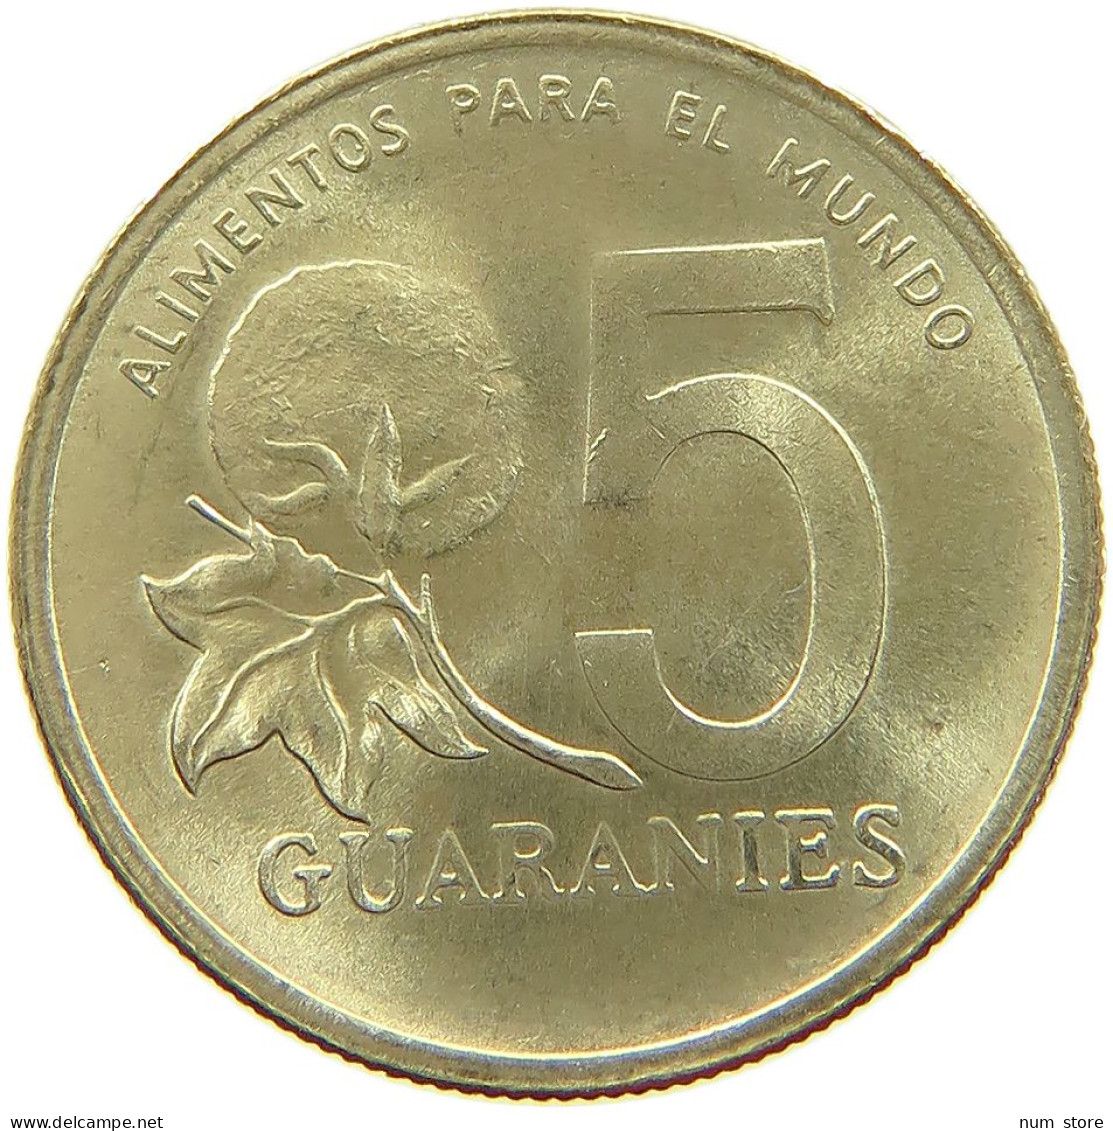 PARAGUAY 5 GUARANIES 1992 #a021 0459 - Paraguay